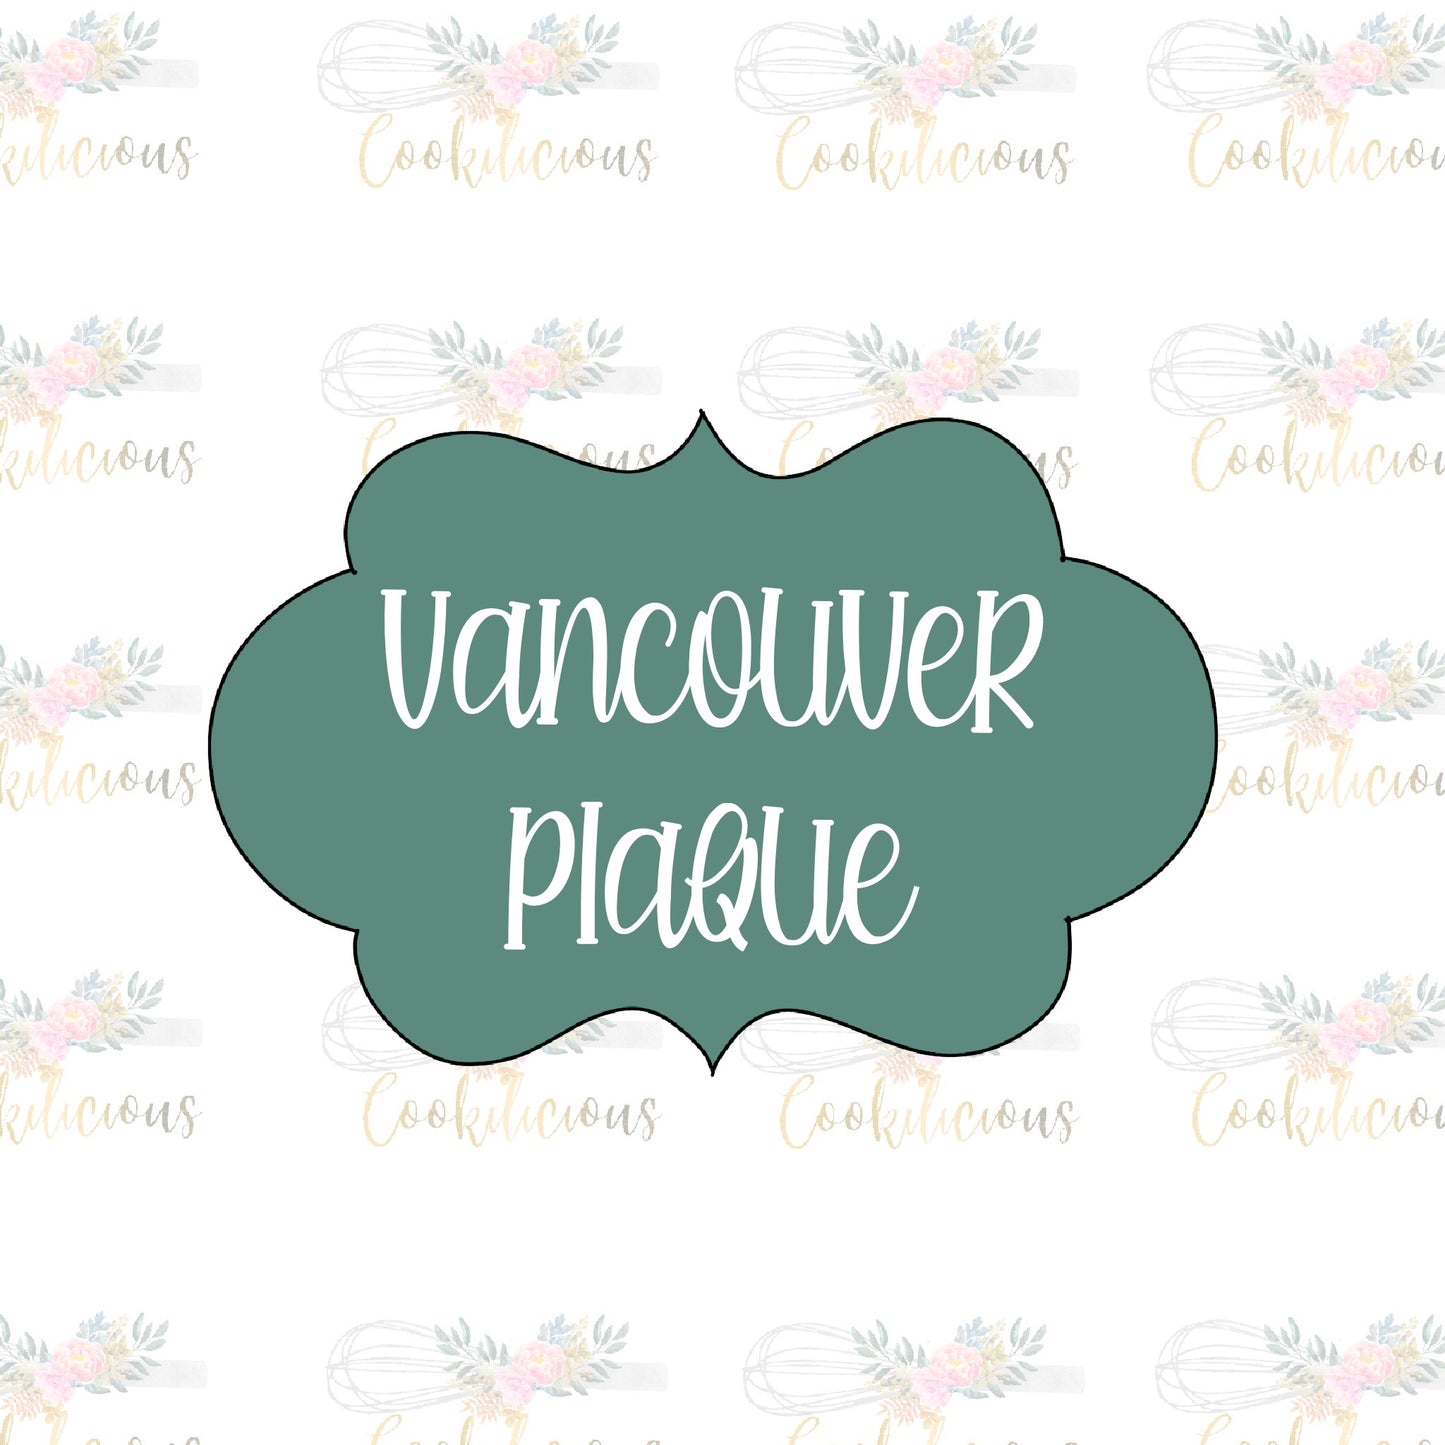 Vancouver Plaque